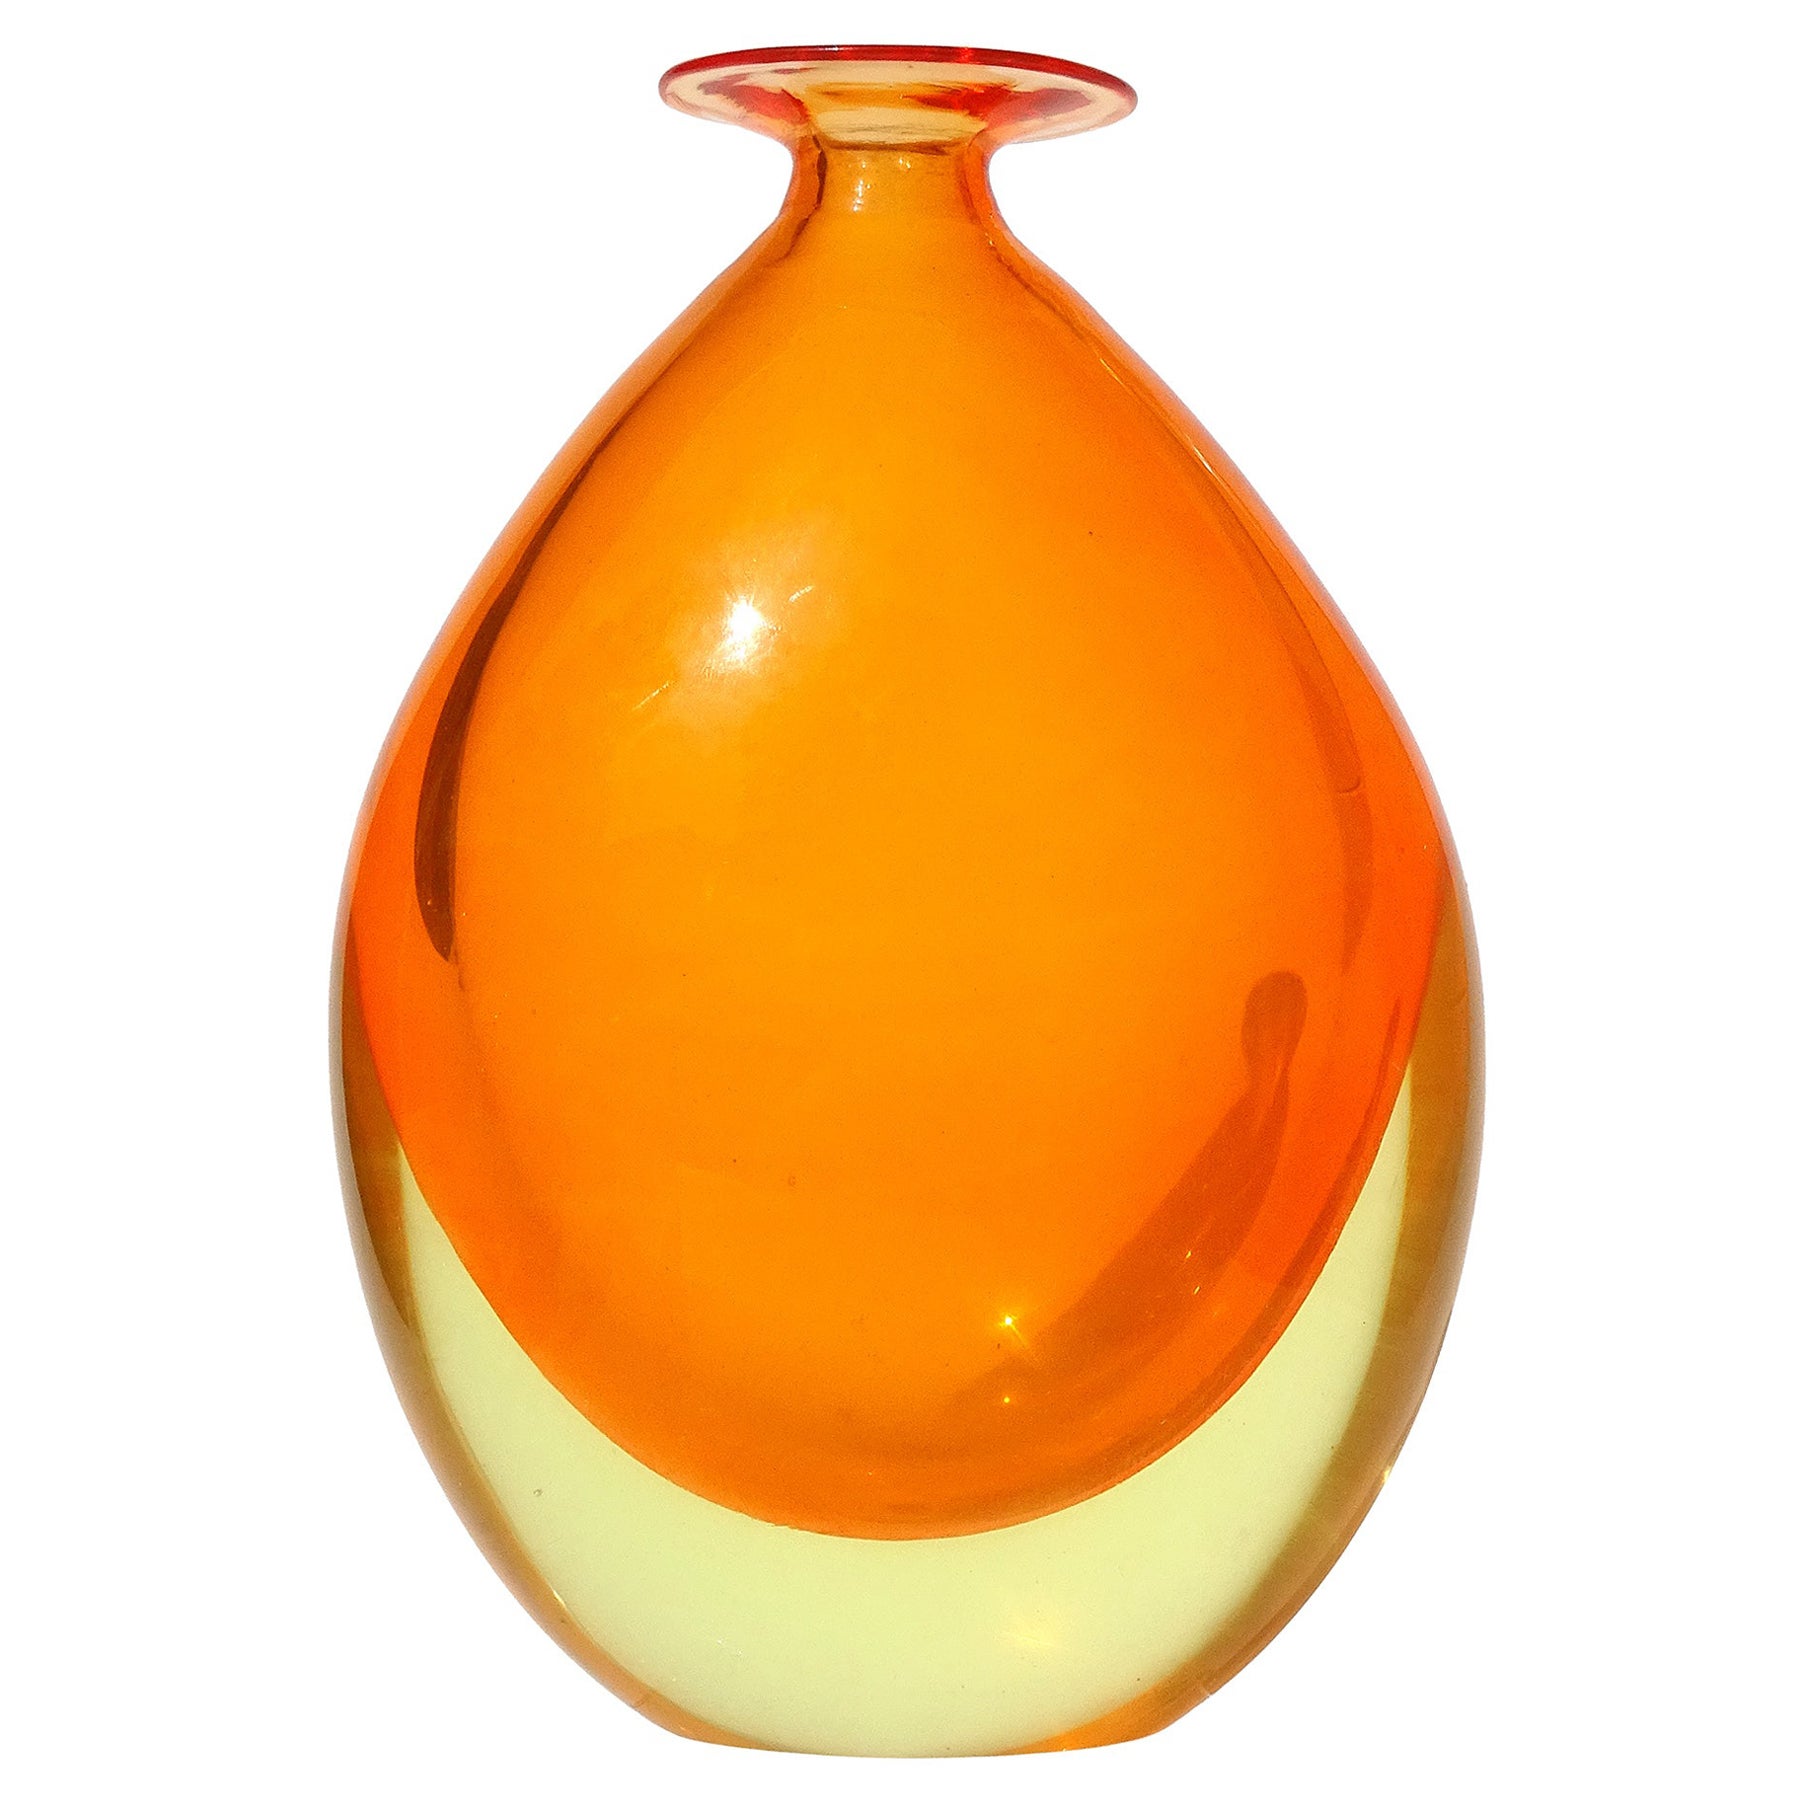 Murano Sommerso Orange Yellow Glowing Uranium Italian Art Glass Flower Vase For Sale